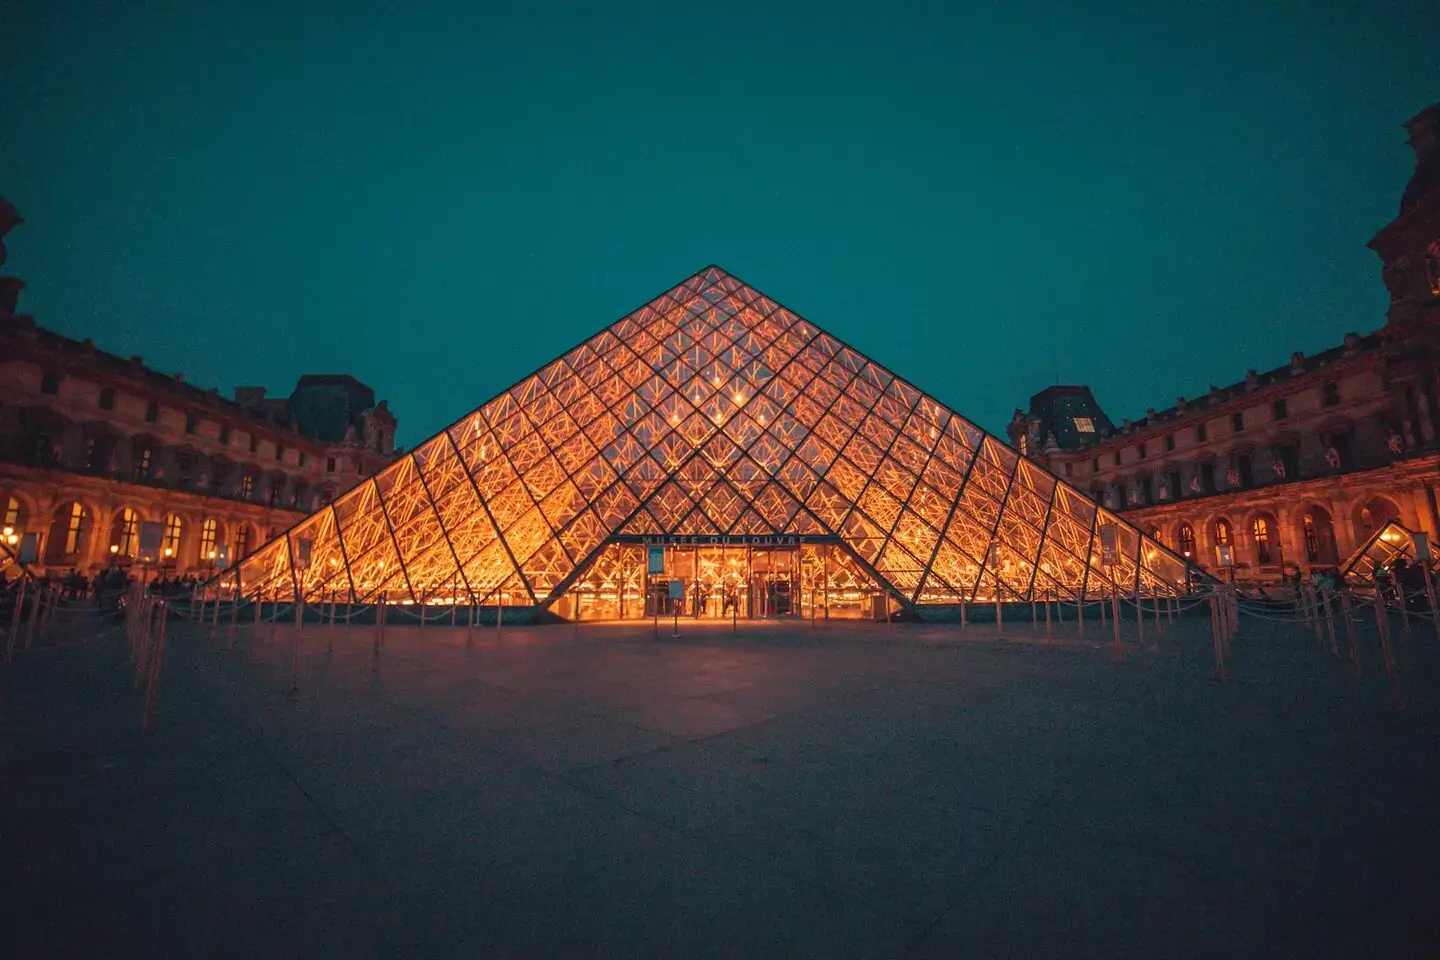 Uma vista noturna da iluminada Pirâmide do Louvre em Paris, cercada pela escuridão e as estruturas históricas do museu